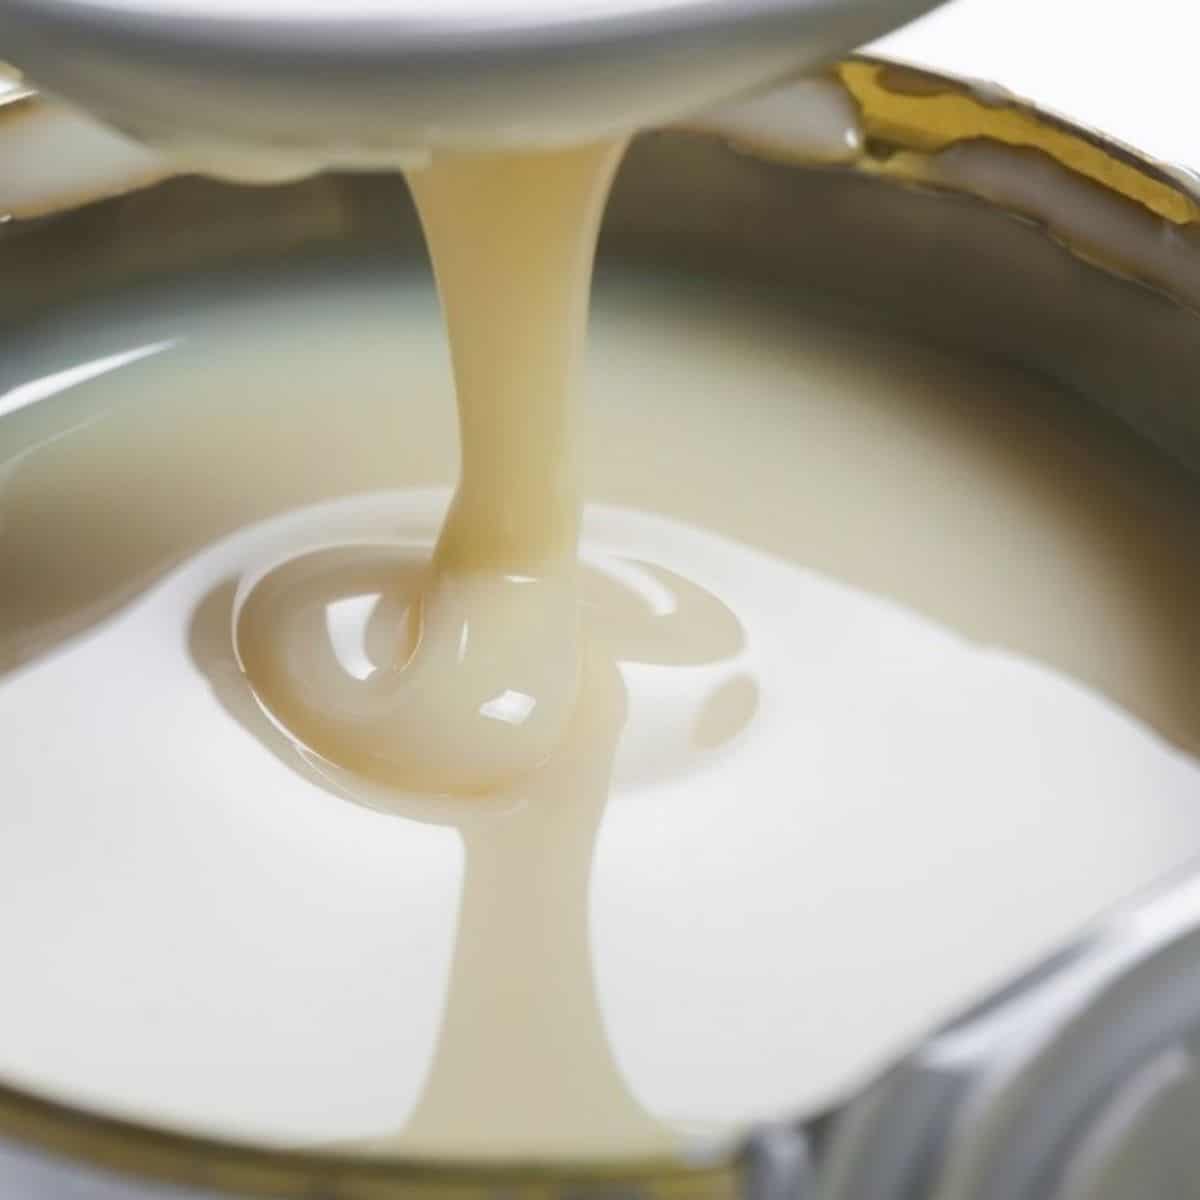 Melhor substituto do leite condensado e alternativas para usar em panificação e culinária.